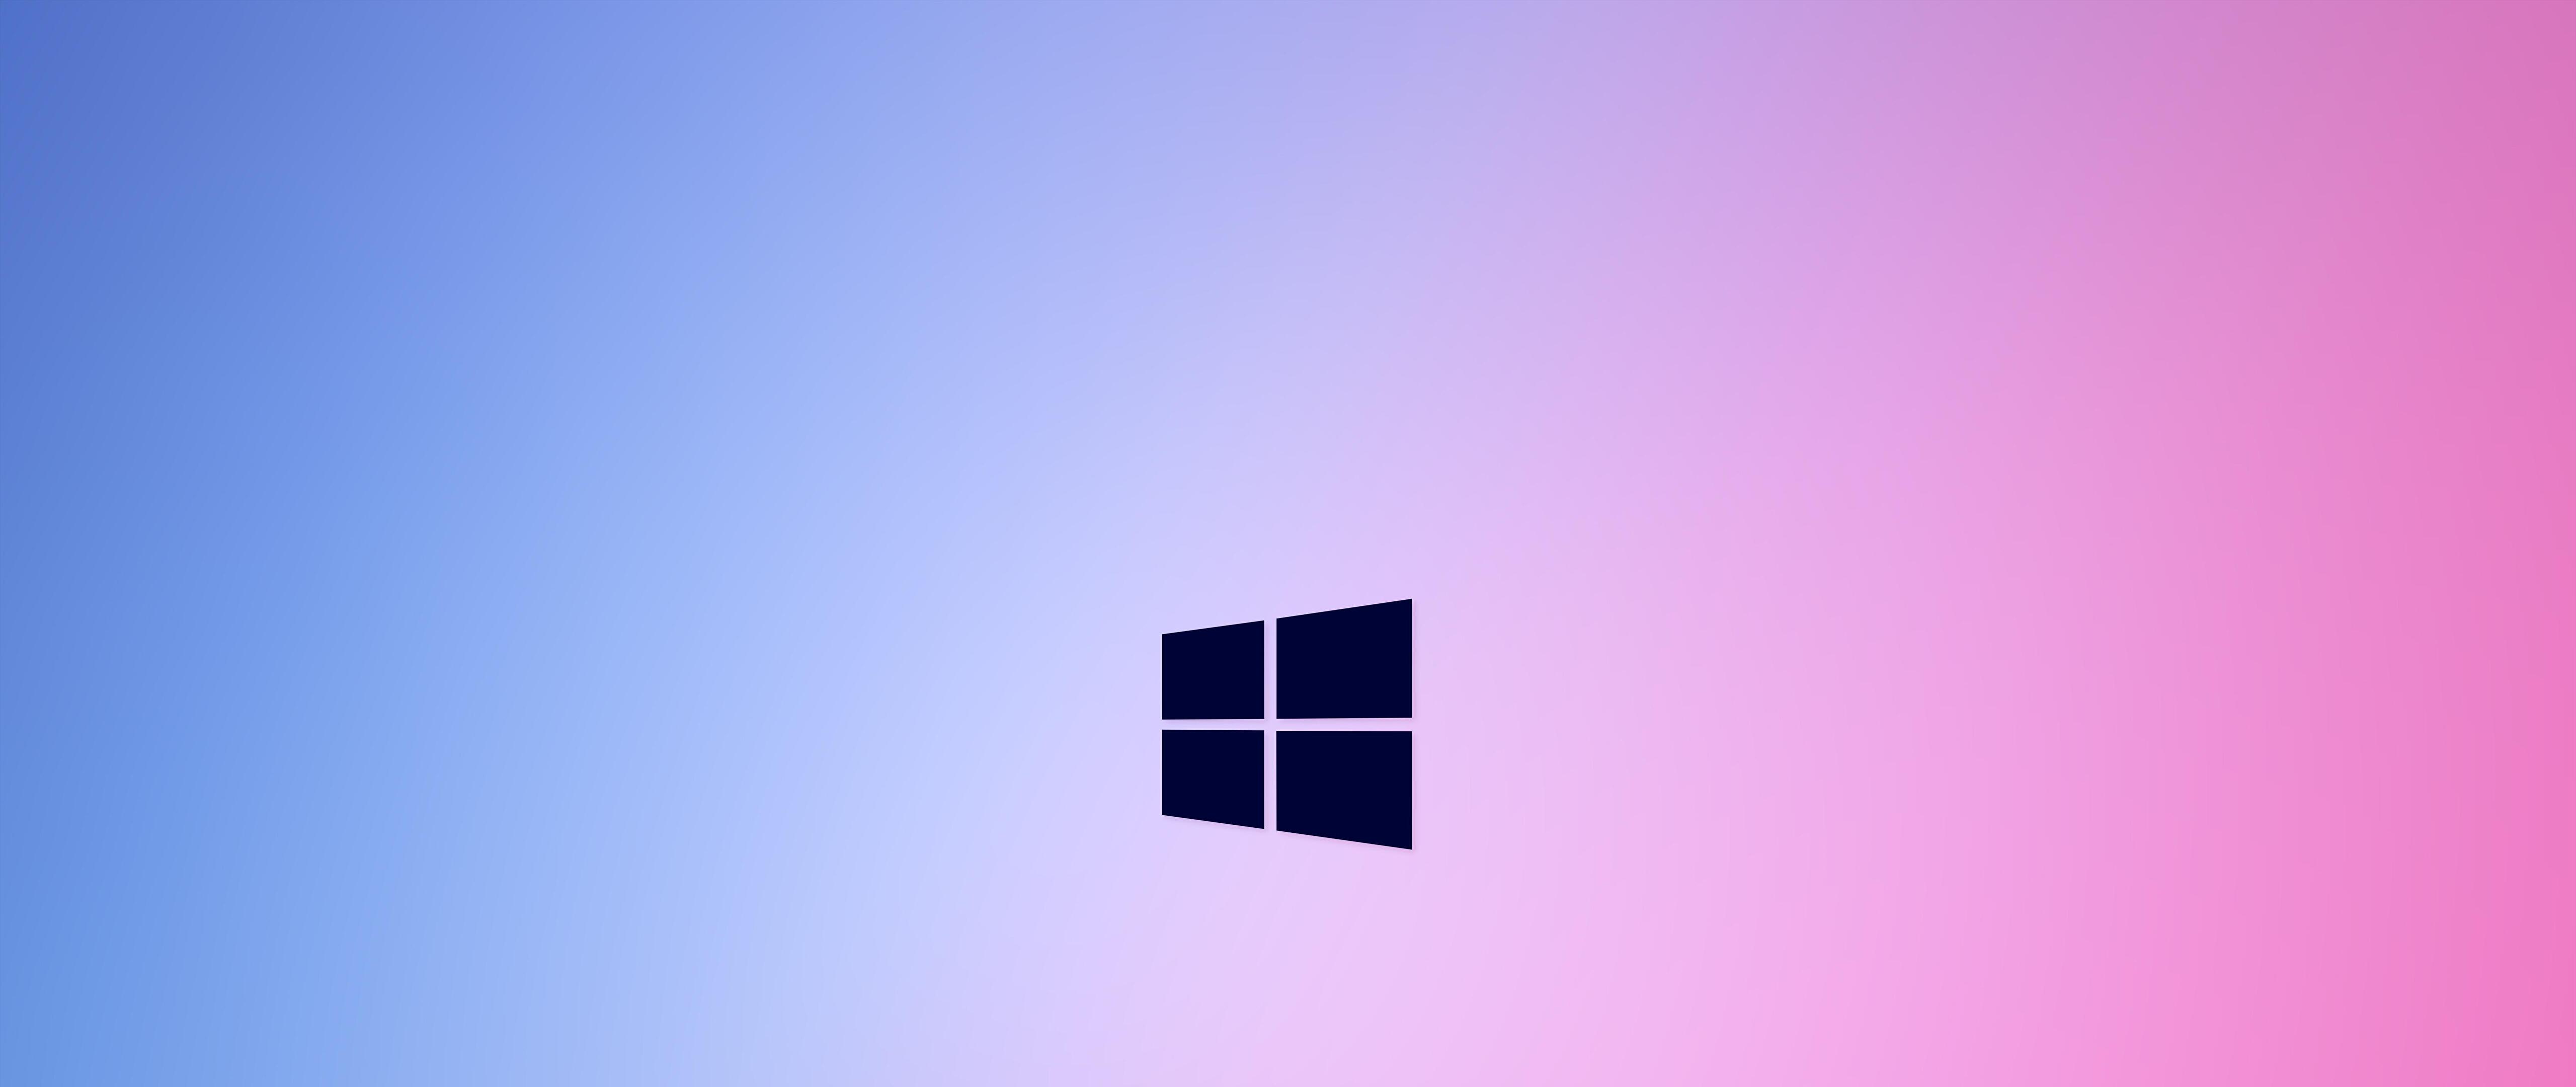 Windows 10 Desktop Wallpapers - Top Free Windows 10 Desktop Backgrounds ...